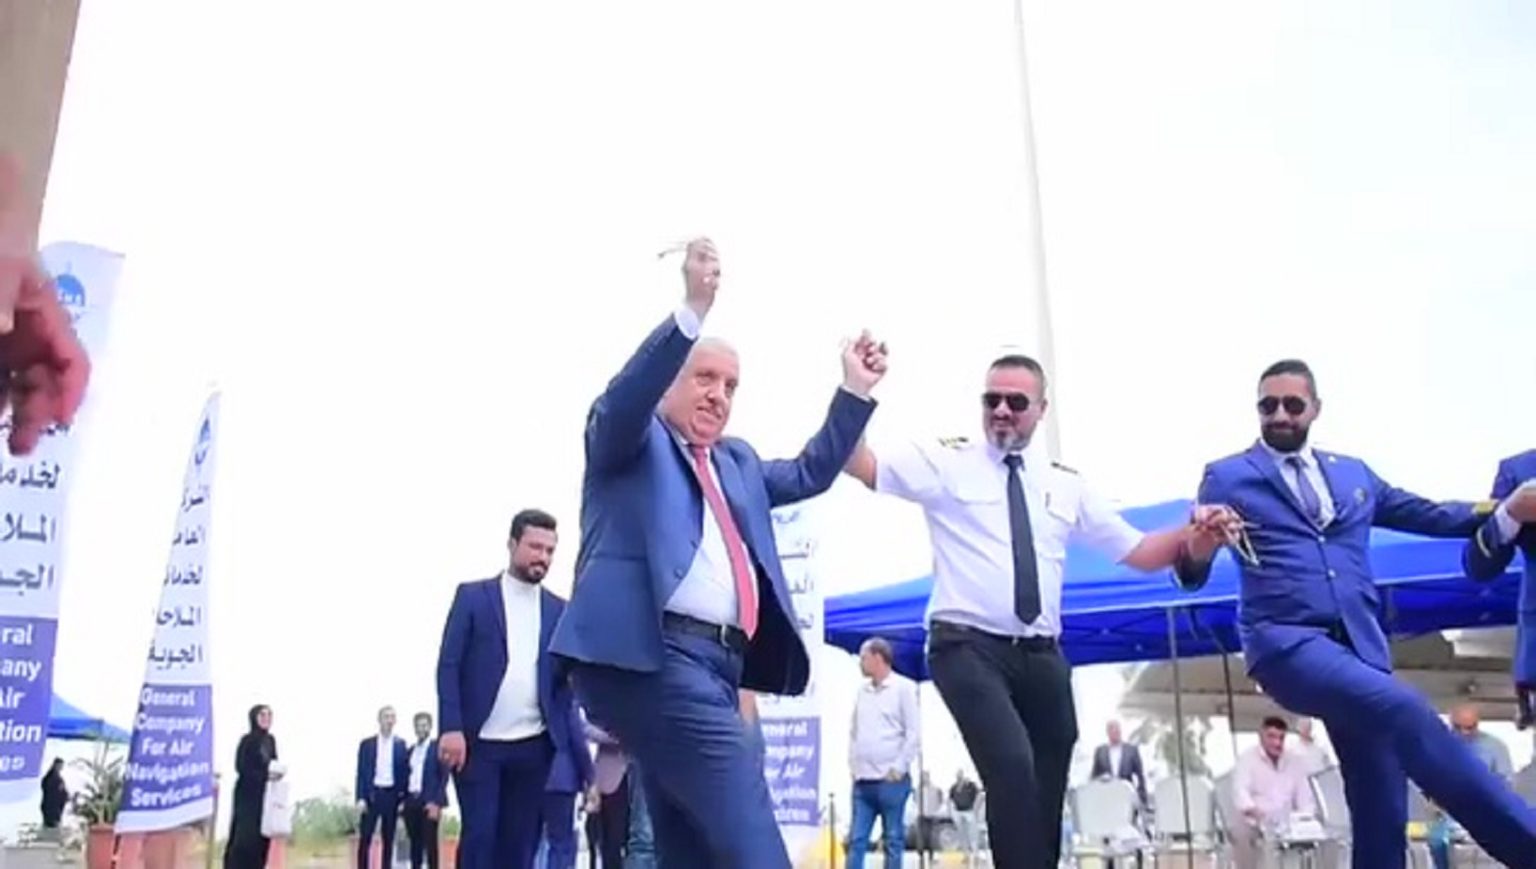 النقل تفتح تحقيقاً بحق موظفين يرقصون الجوبي على اغاني تمجد "صدام حسين"